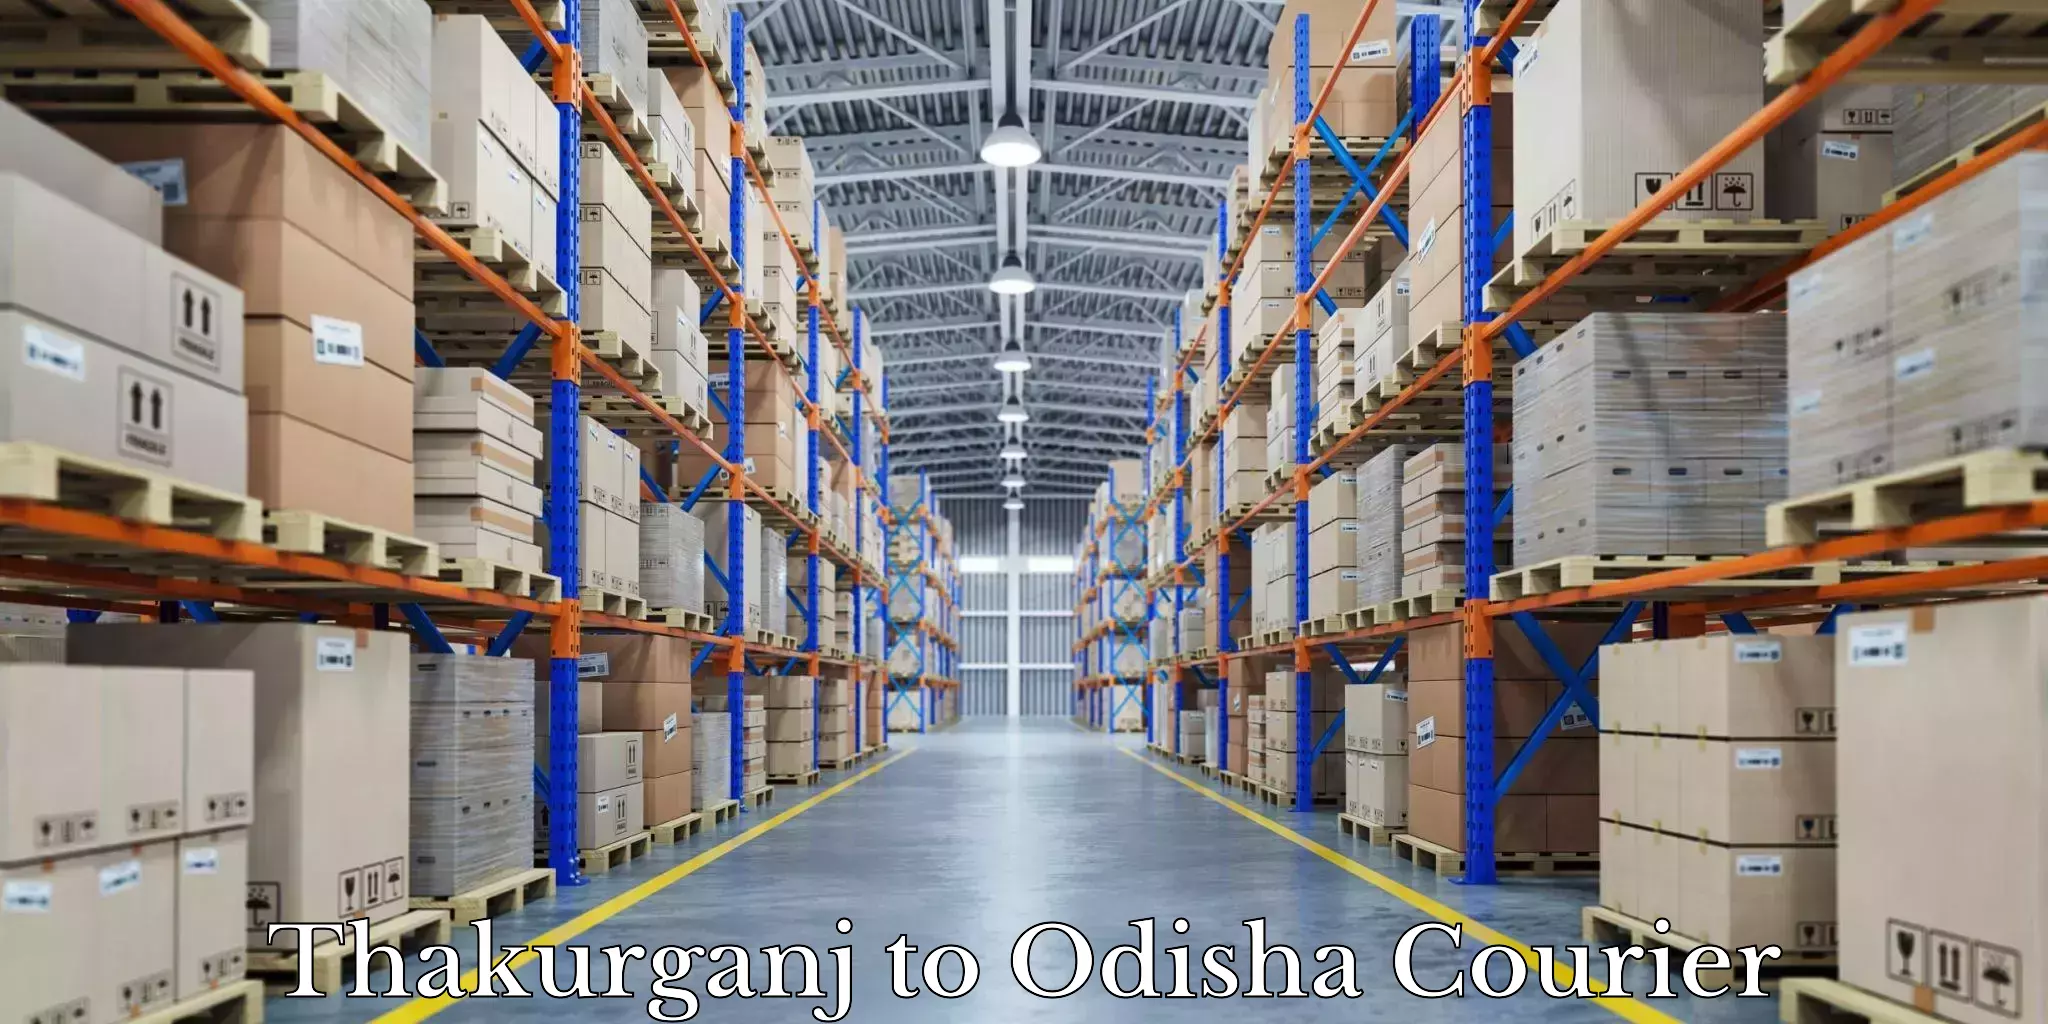 Moving and storage services Thakurganj to Telkoi